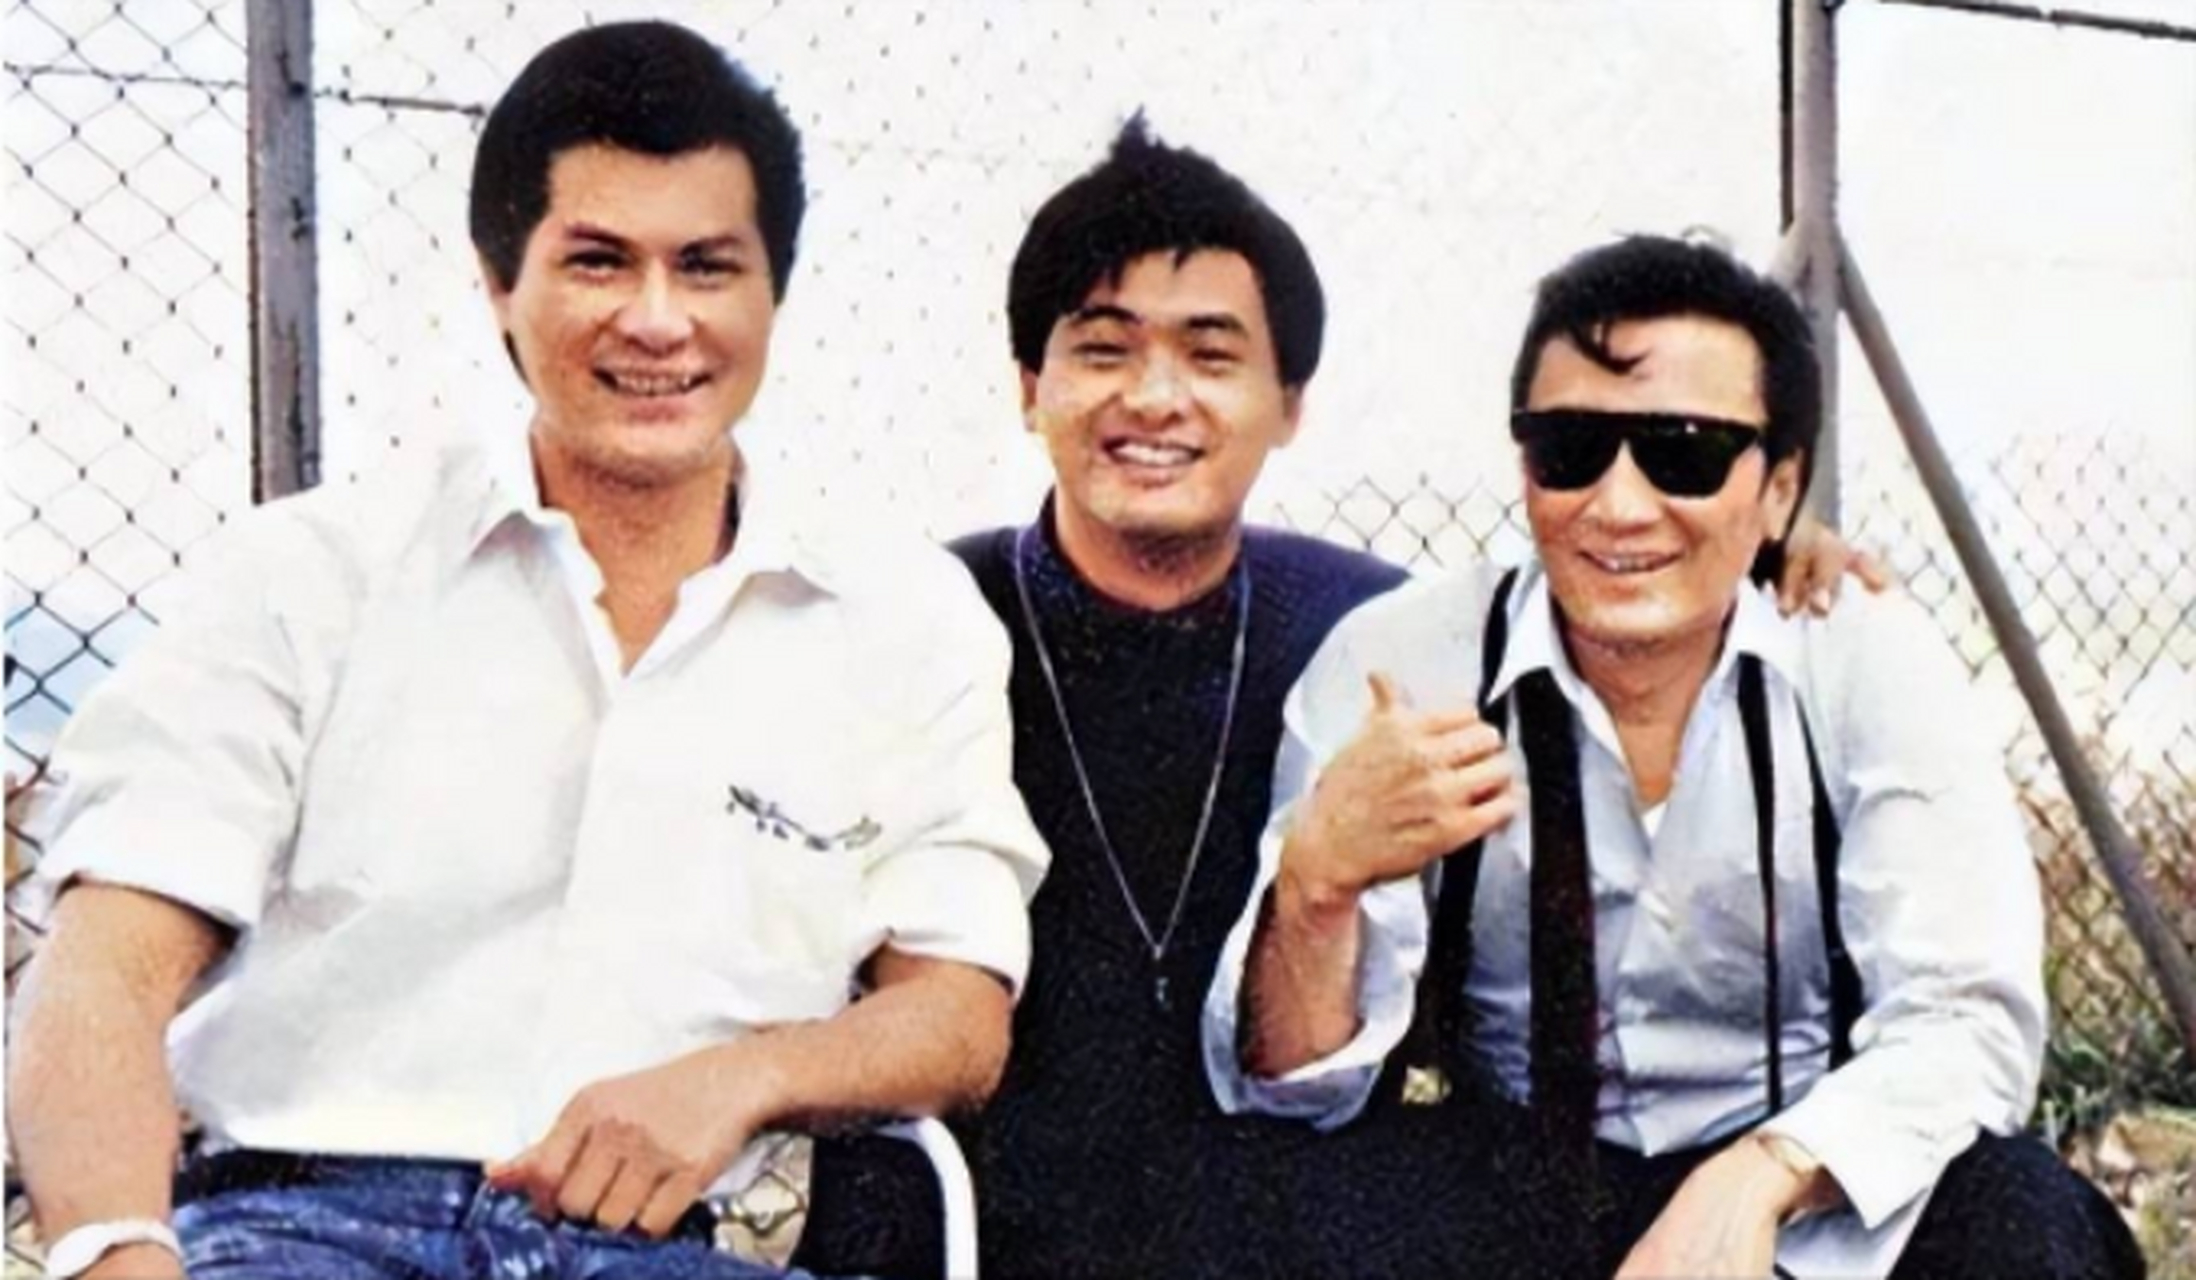 1986年,邓光荣打电话跟向华强说,借周润发50天时间拍电影